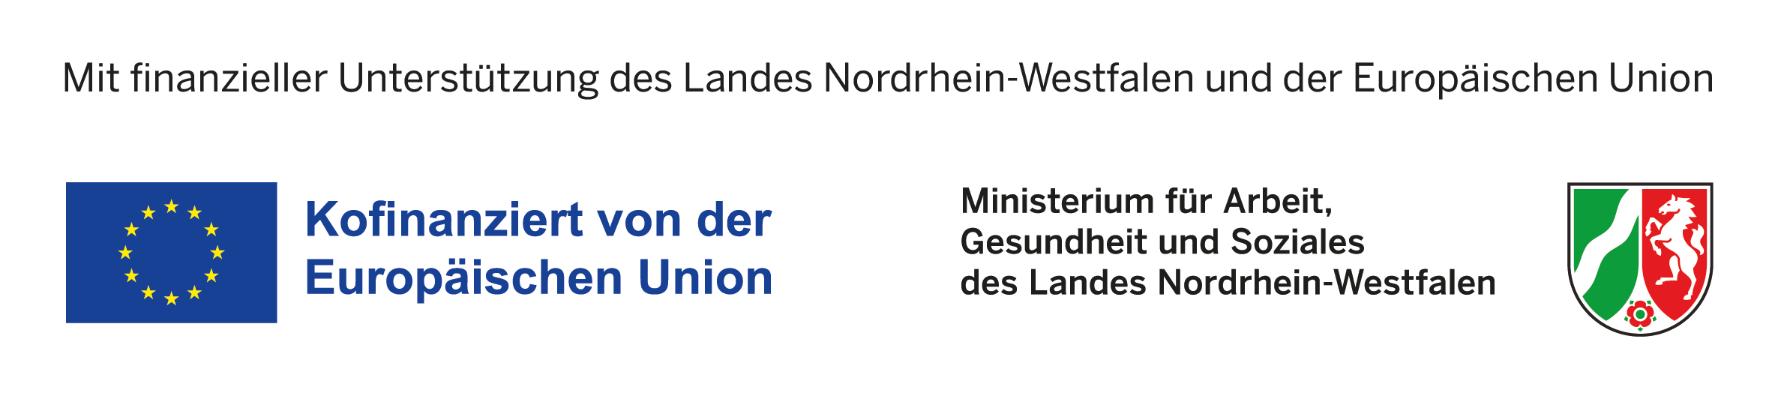 Ministerium für Arbeit, Gesundheit und Soziales des Landes NRW (c) Ministerium für Arbeit, Gesundheit und Soziales des Landes NRW